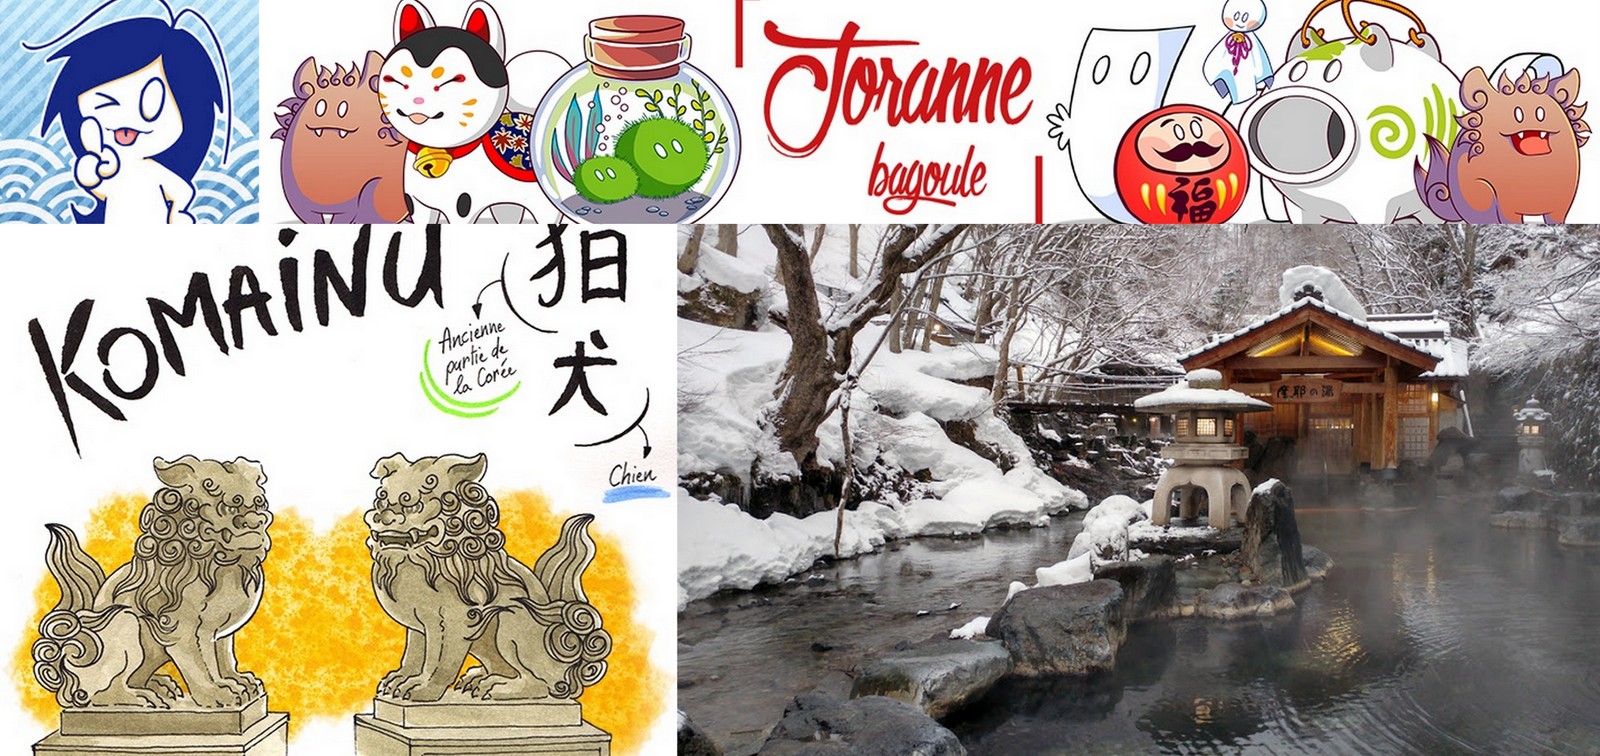 Préparation voyage au Japon – Carnet de voyage - Joranne Bagoule - Blog sur  le japon en BD